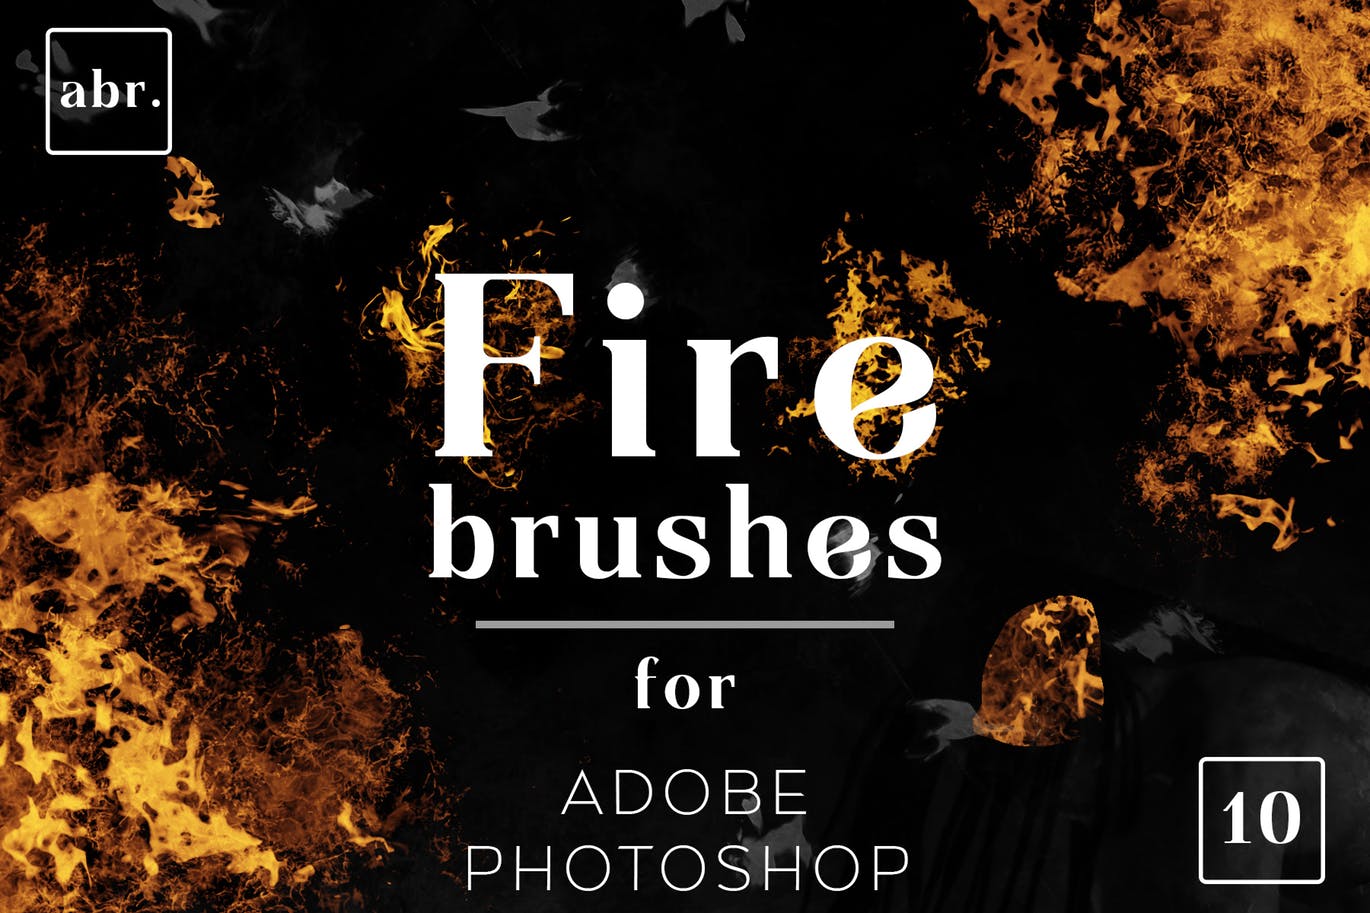 10种不同样式的魔幻火焰效果PS笔刷素材库精选 Fire Photoshop Brushes插图